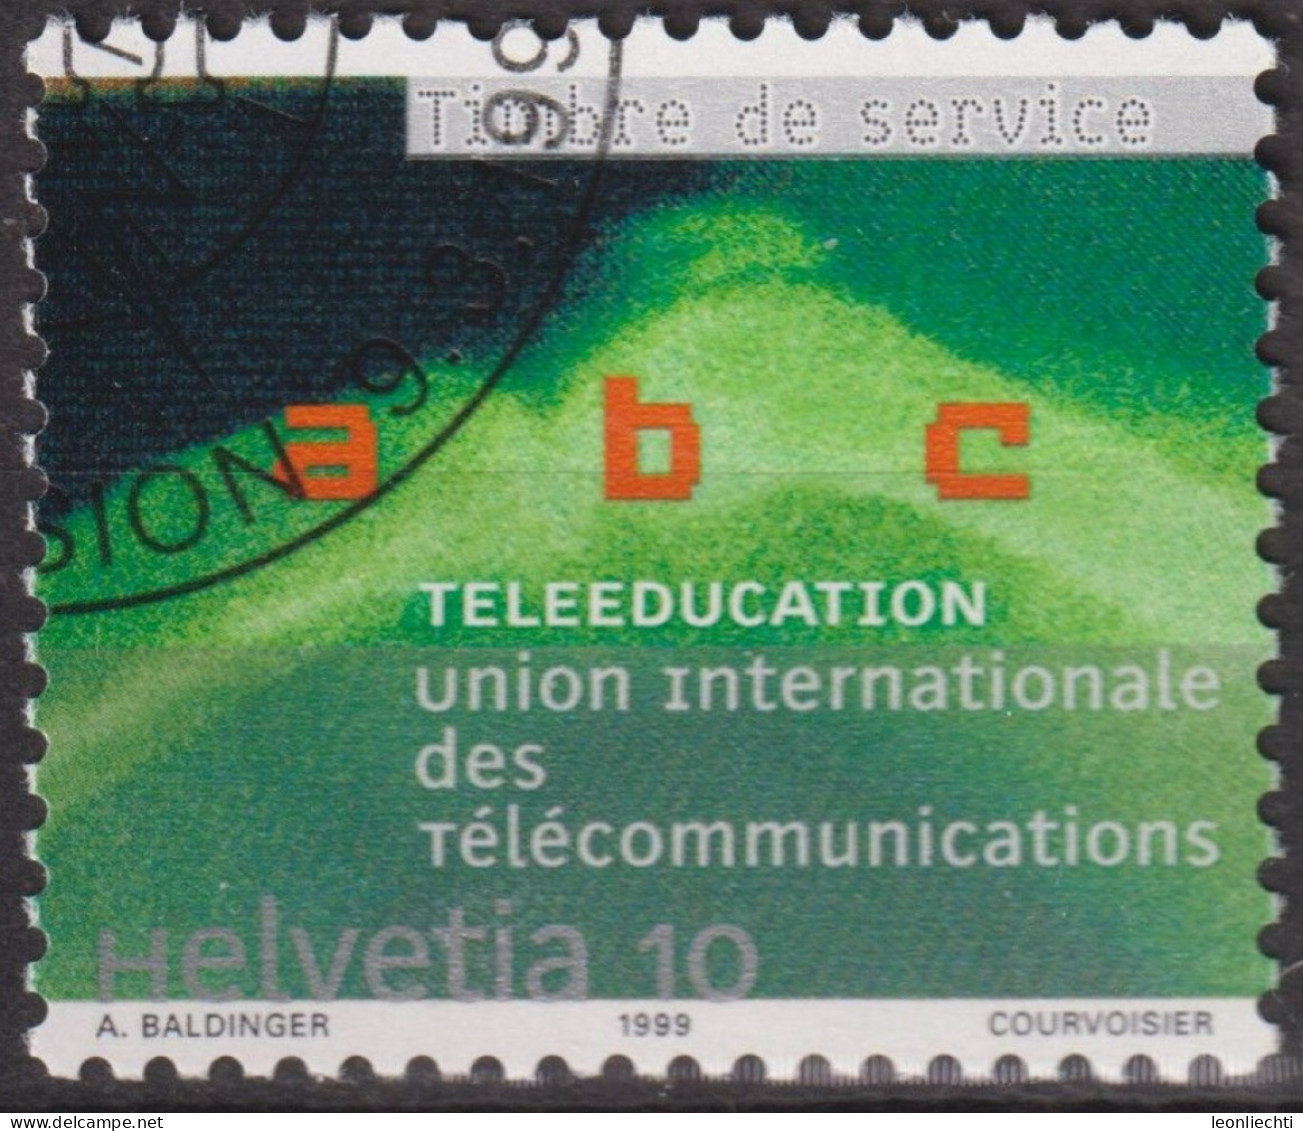 1999 CH / Dienstmarke UIT ° Mi:CH-UIT 16, Yt:CH S472, Zum:CH-UIT 16, Telelernen - Oficial